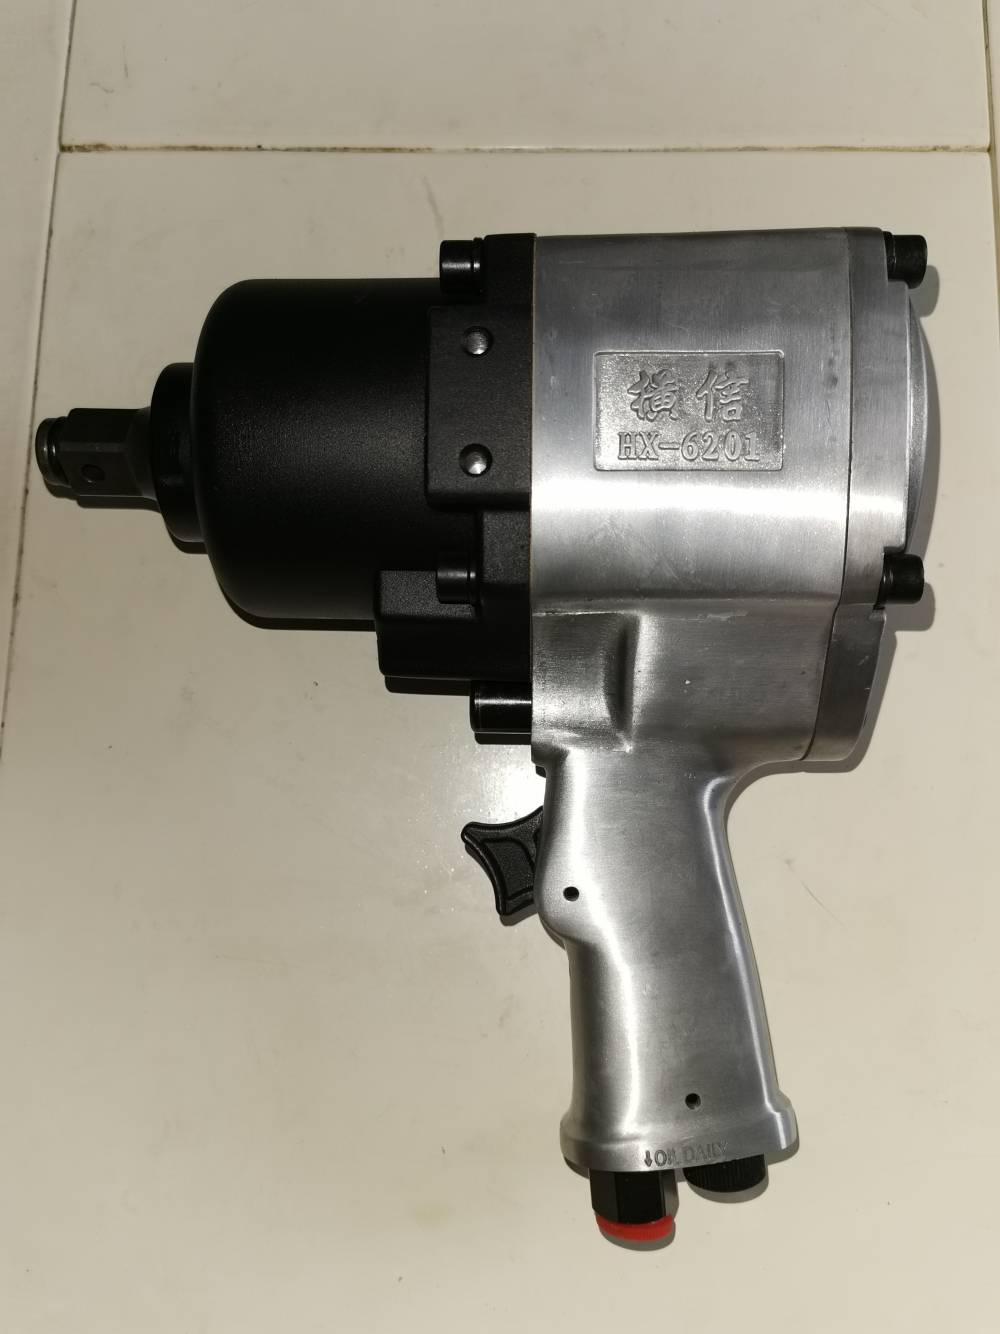 供应横信牌 HX-6201 3/4寸风扳手 气动扳手 气动工具